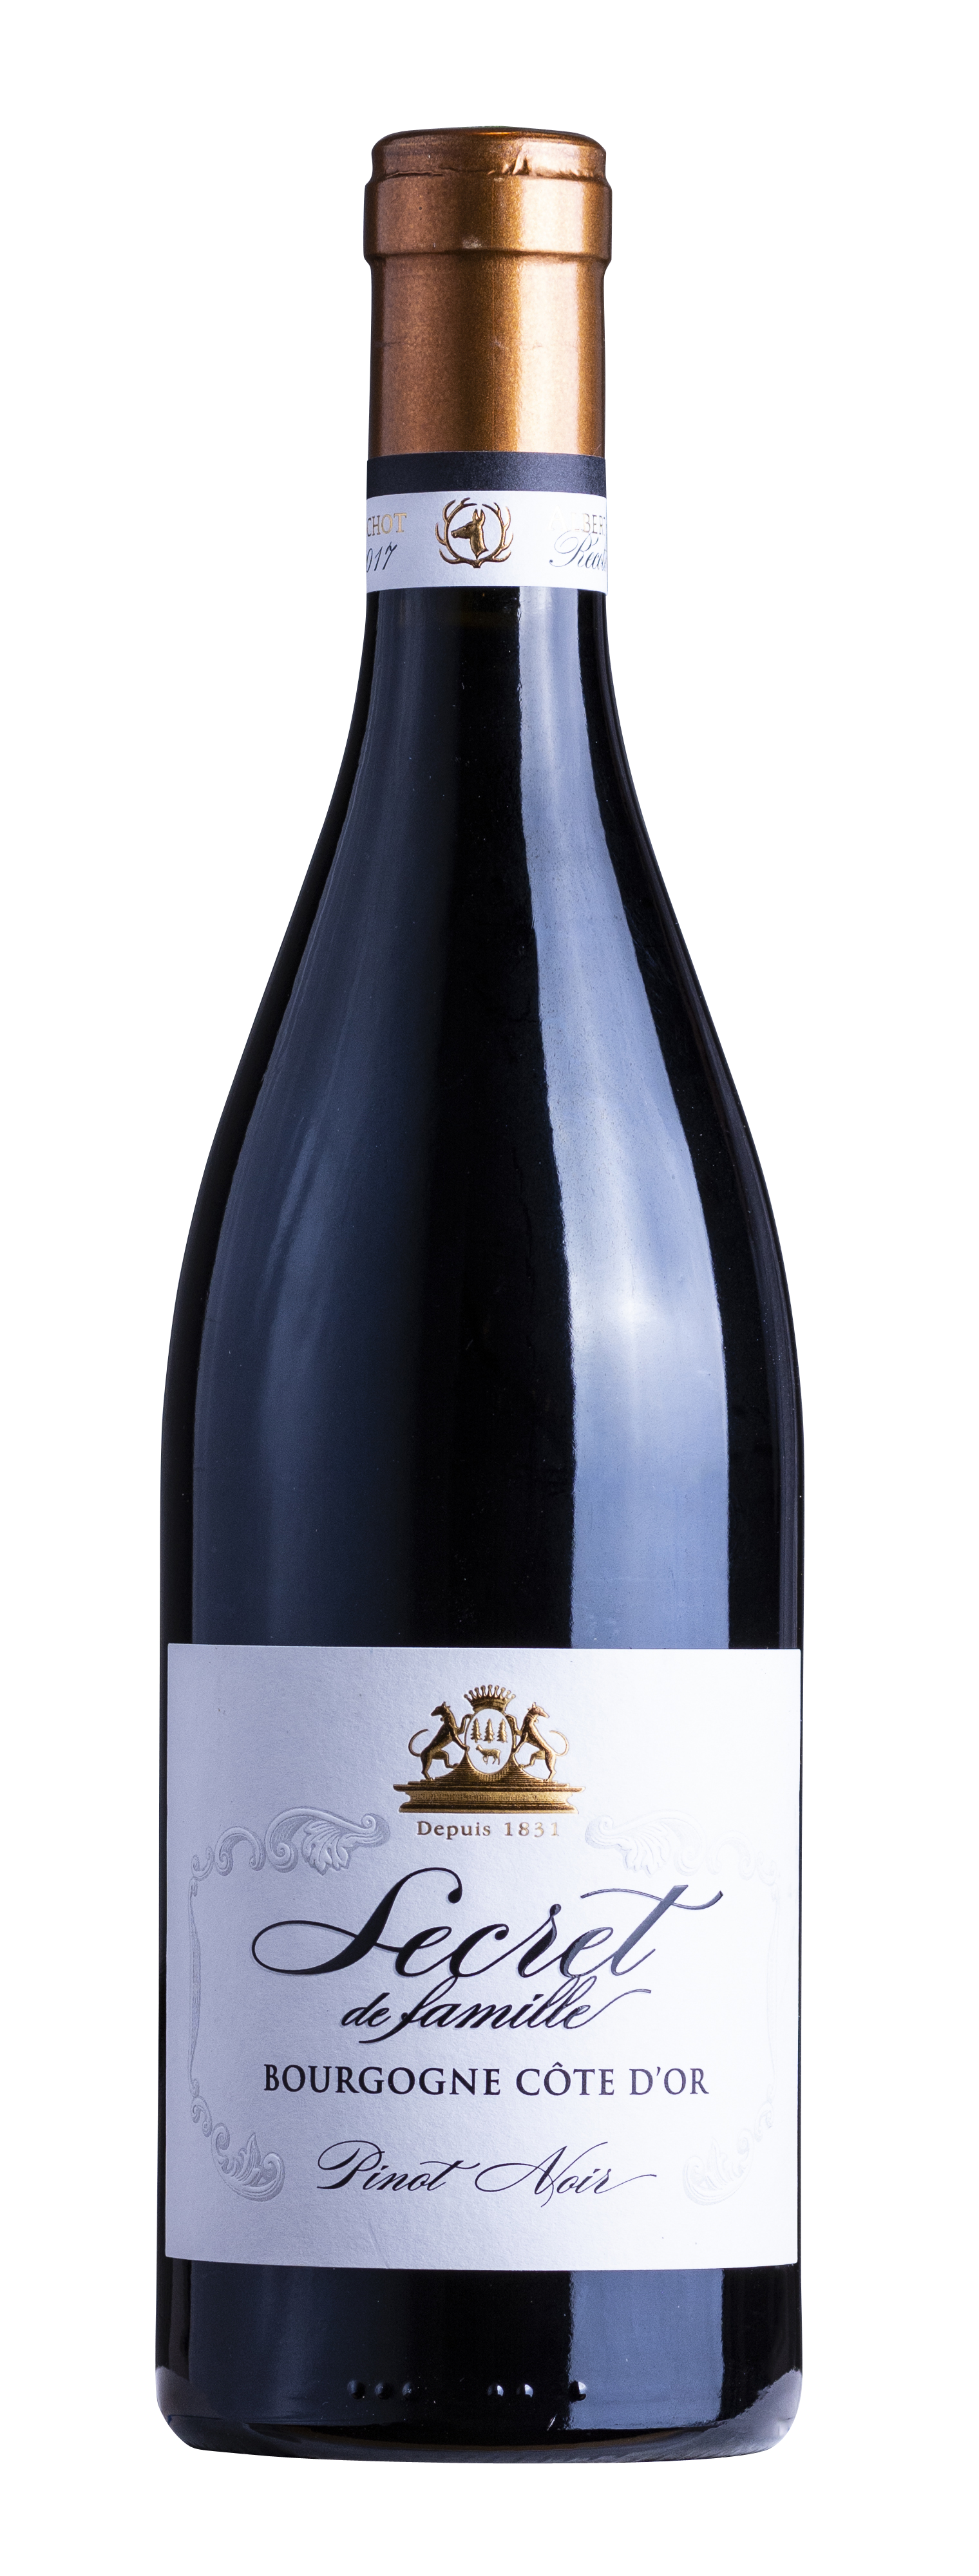 Bourgogne Côte d'Or AOC Pinot Noir «Secret de famille» 2017